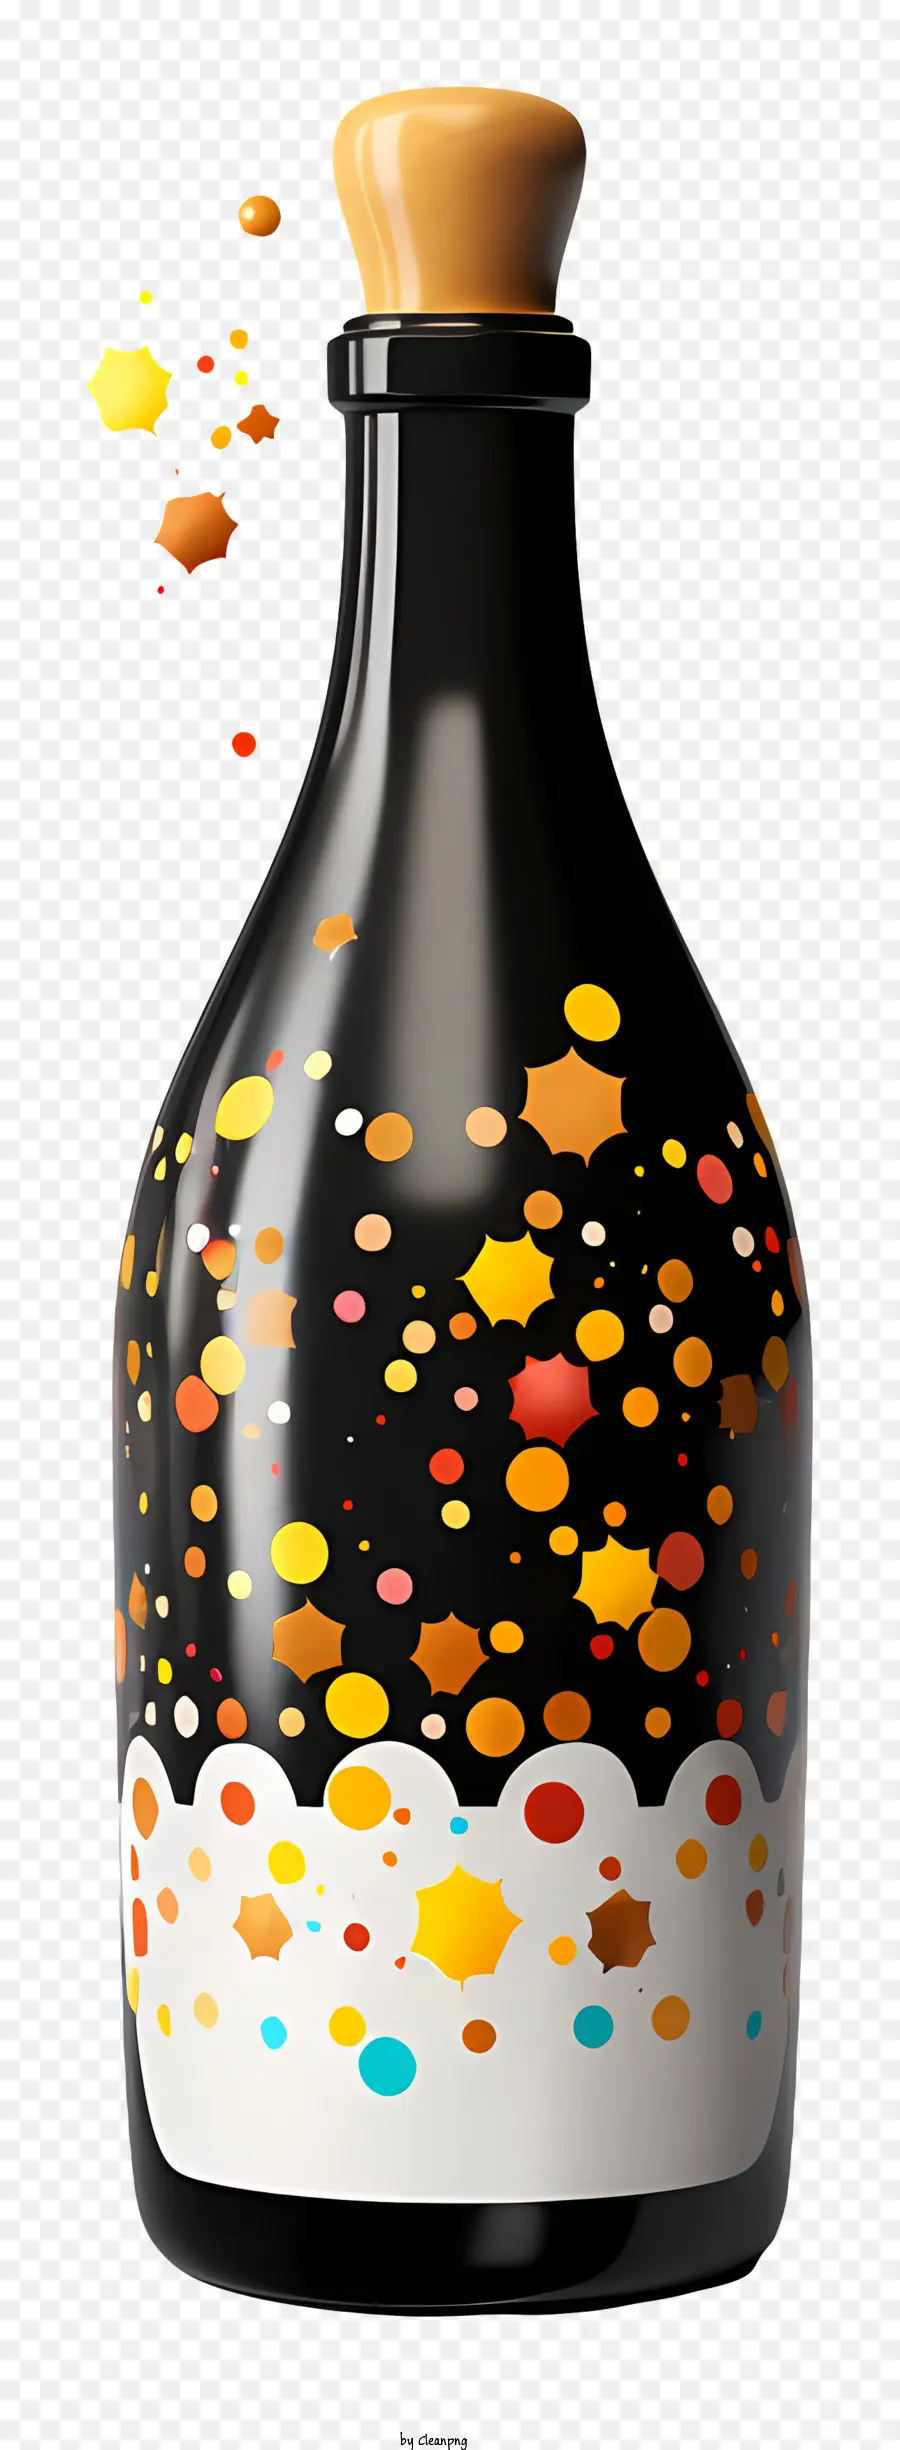 bordo in legno in vetro coriate colorate coriandoli scintillanti sfondo nero - Confetti colorati in bottiglia di vetro con sfondo nero